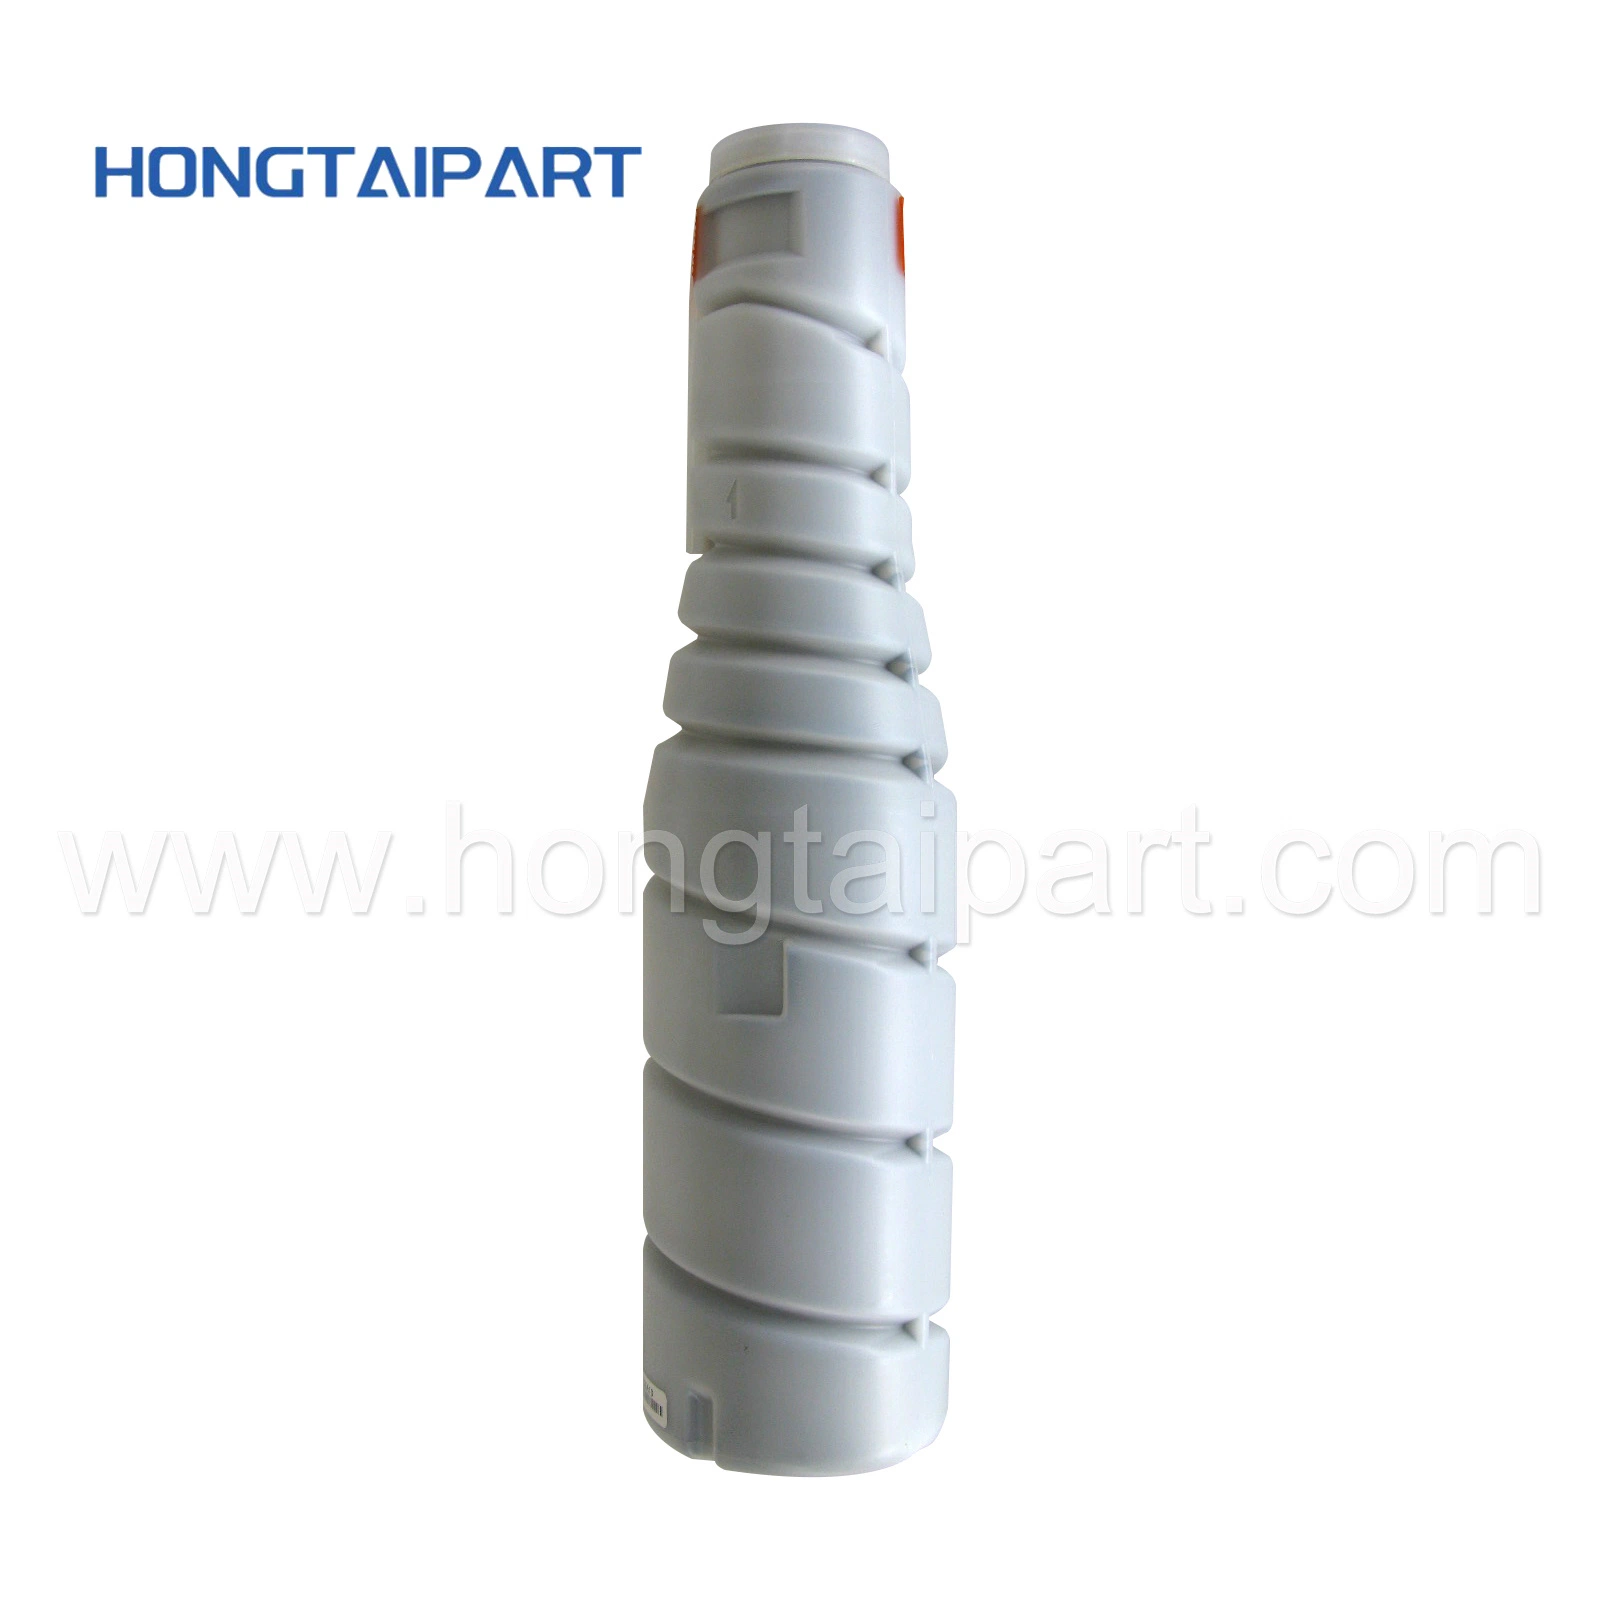 Toner cartridge for Konica Minolta Bizhub 223 283 A202031 Tn217